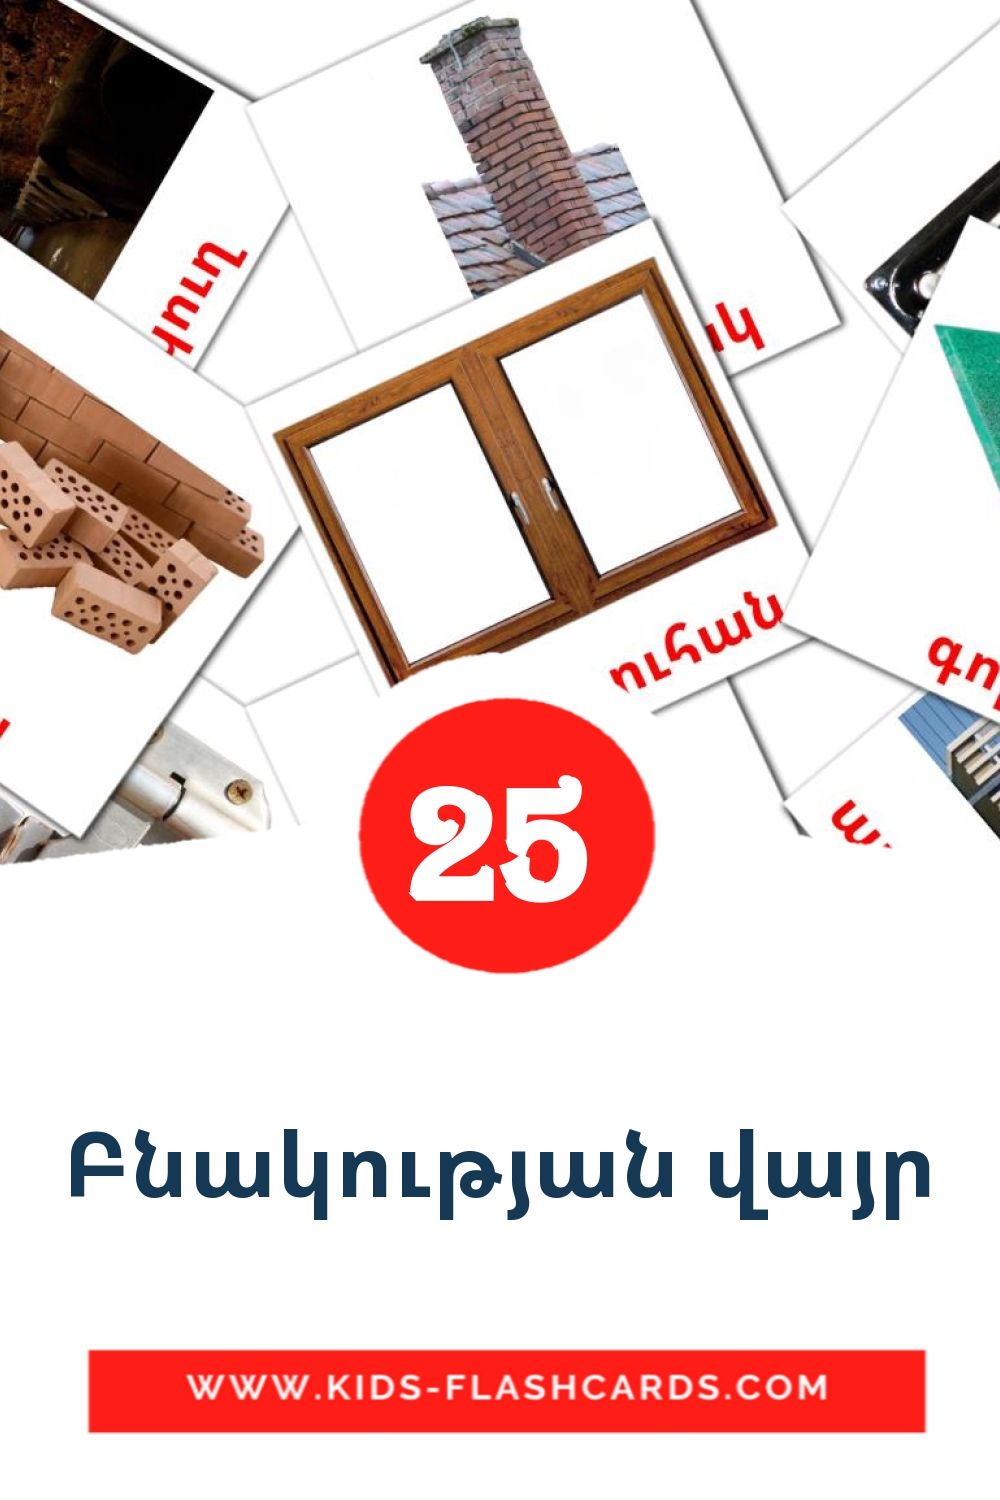 25 Cartões com Imagens de Բնակության վայր para Jardim de Infância em armênio